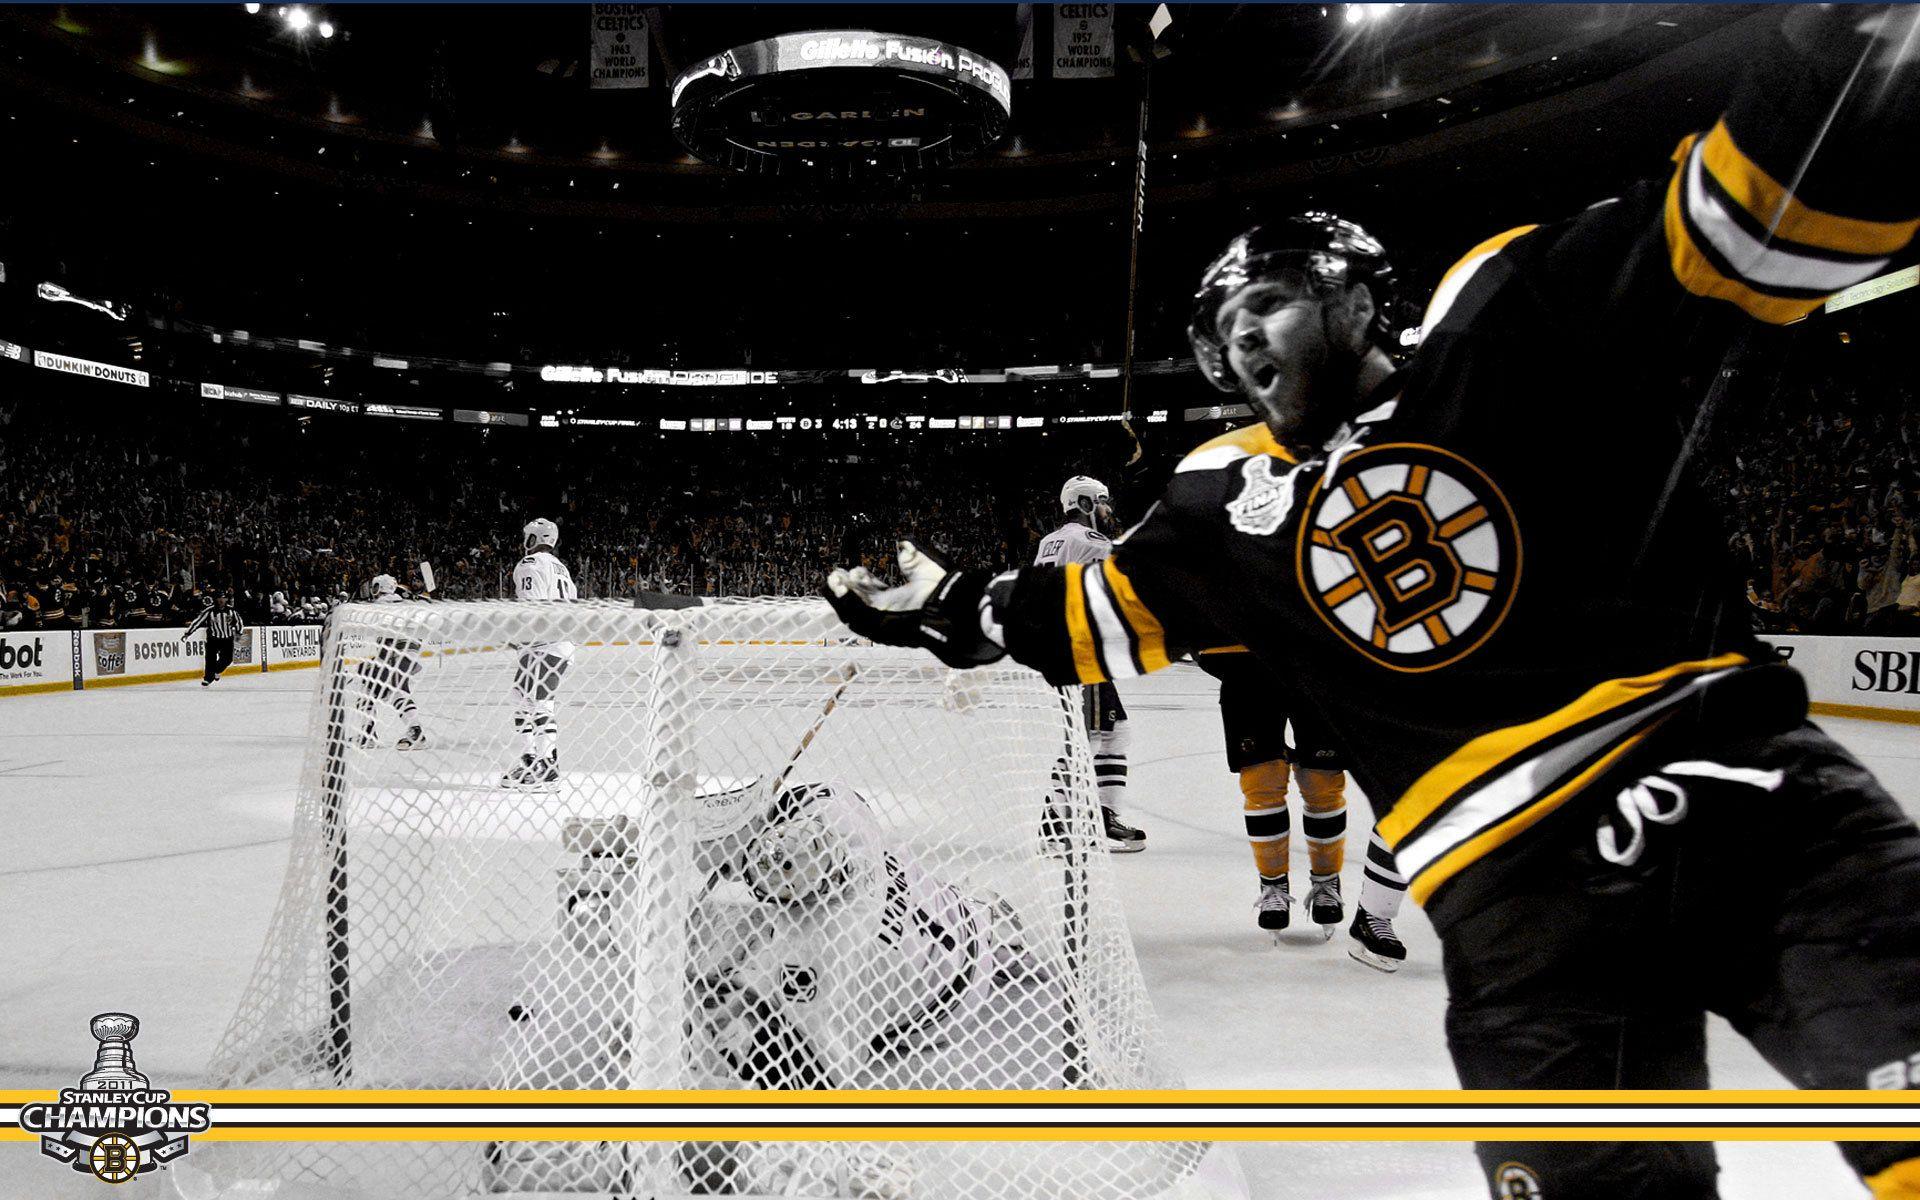 Boston Bruins Wallpaper HD wallpaper search